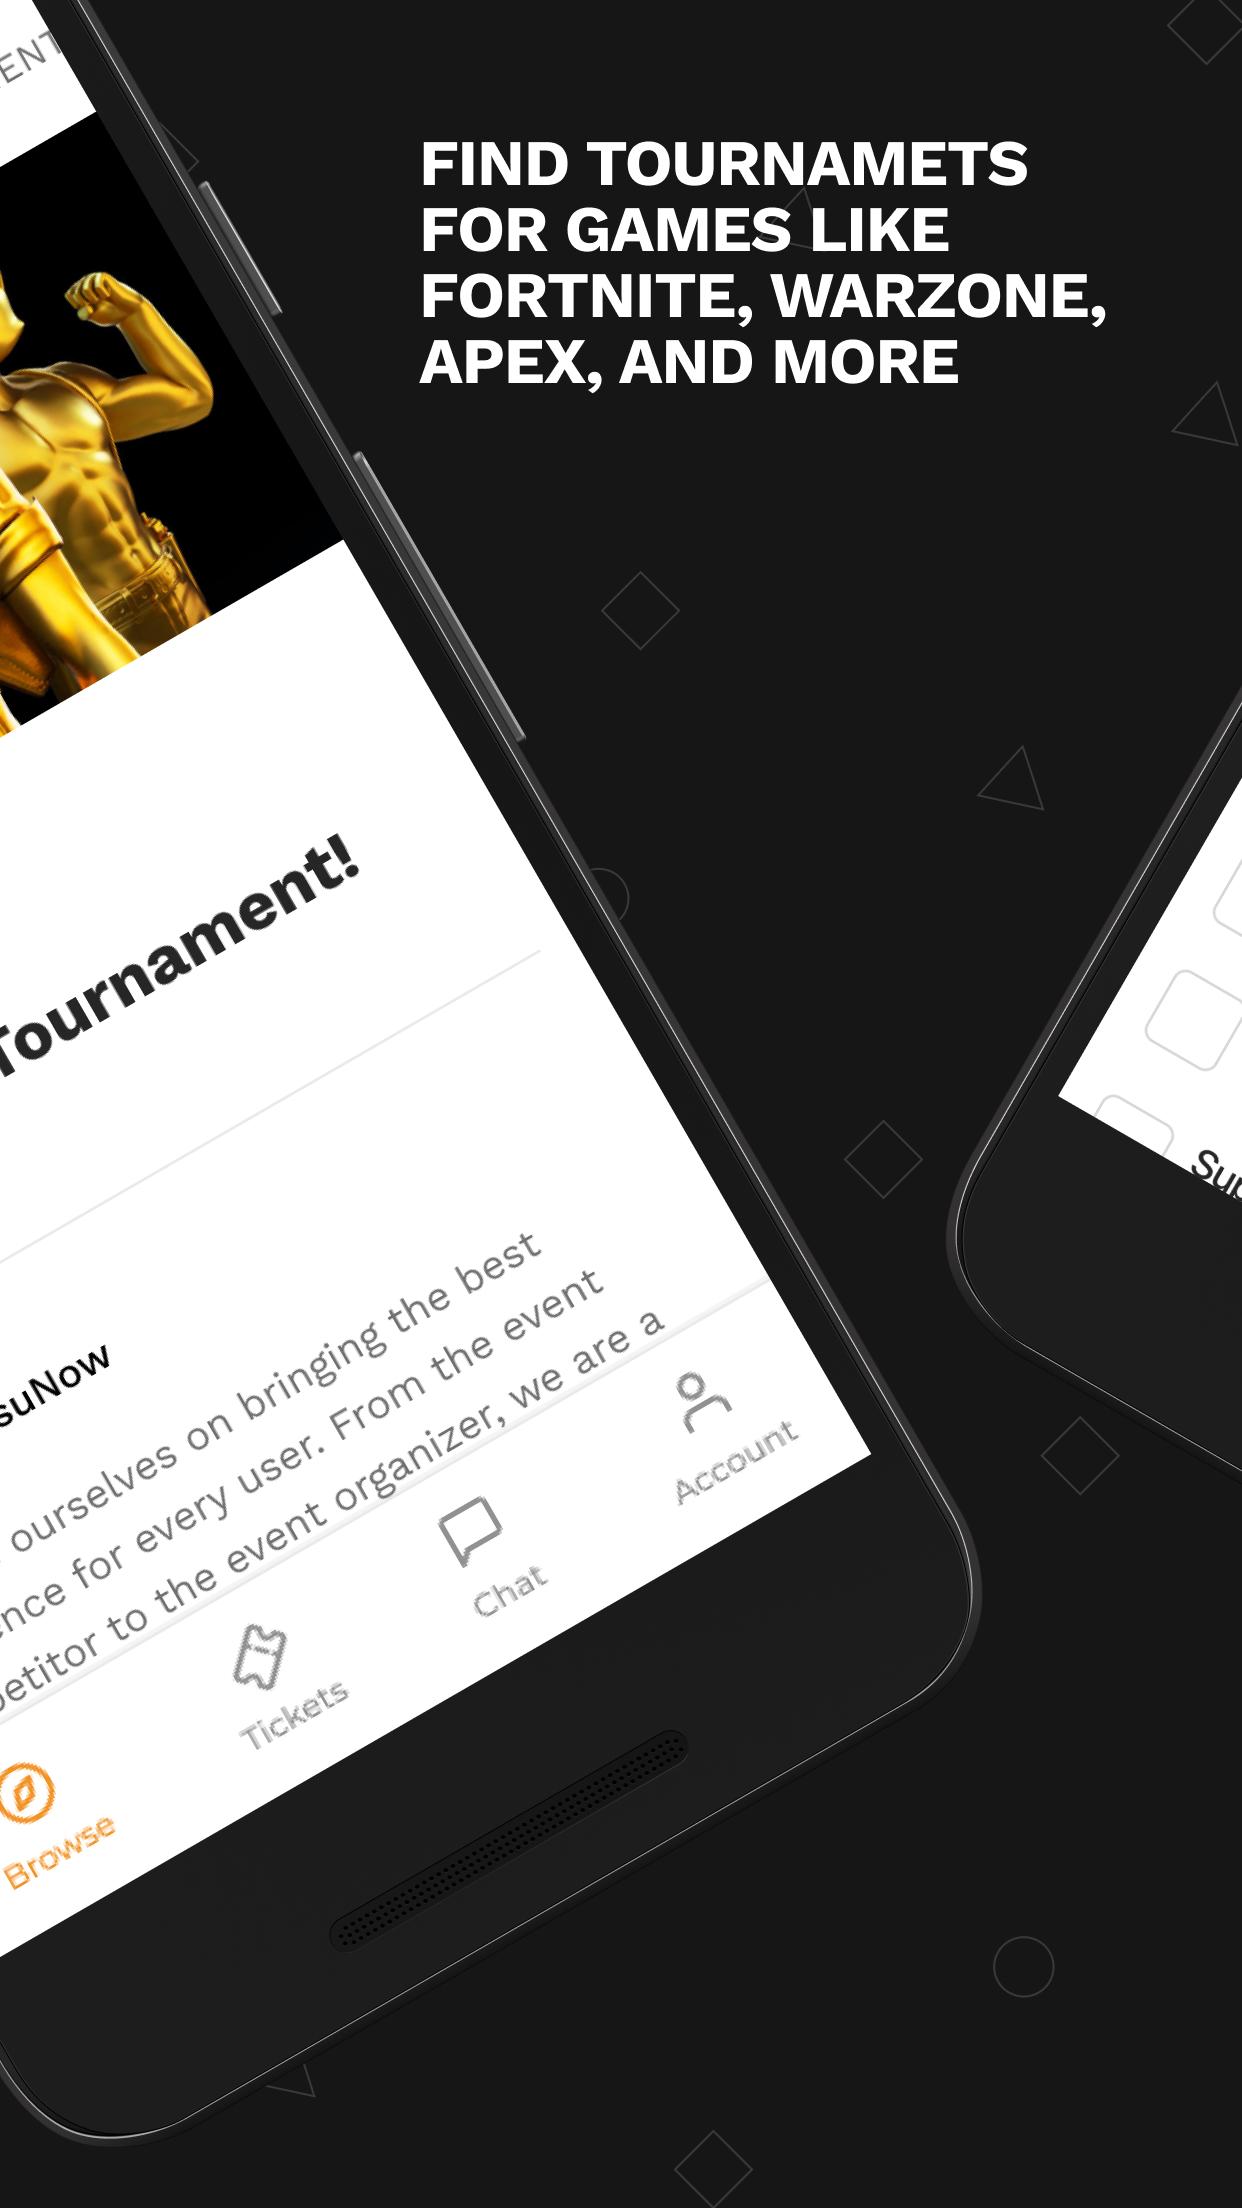 GosuNow eSports Tournaments 0.3.4 Screenshot 3